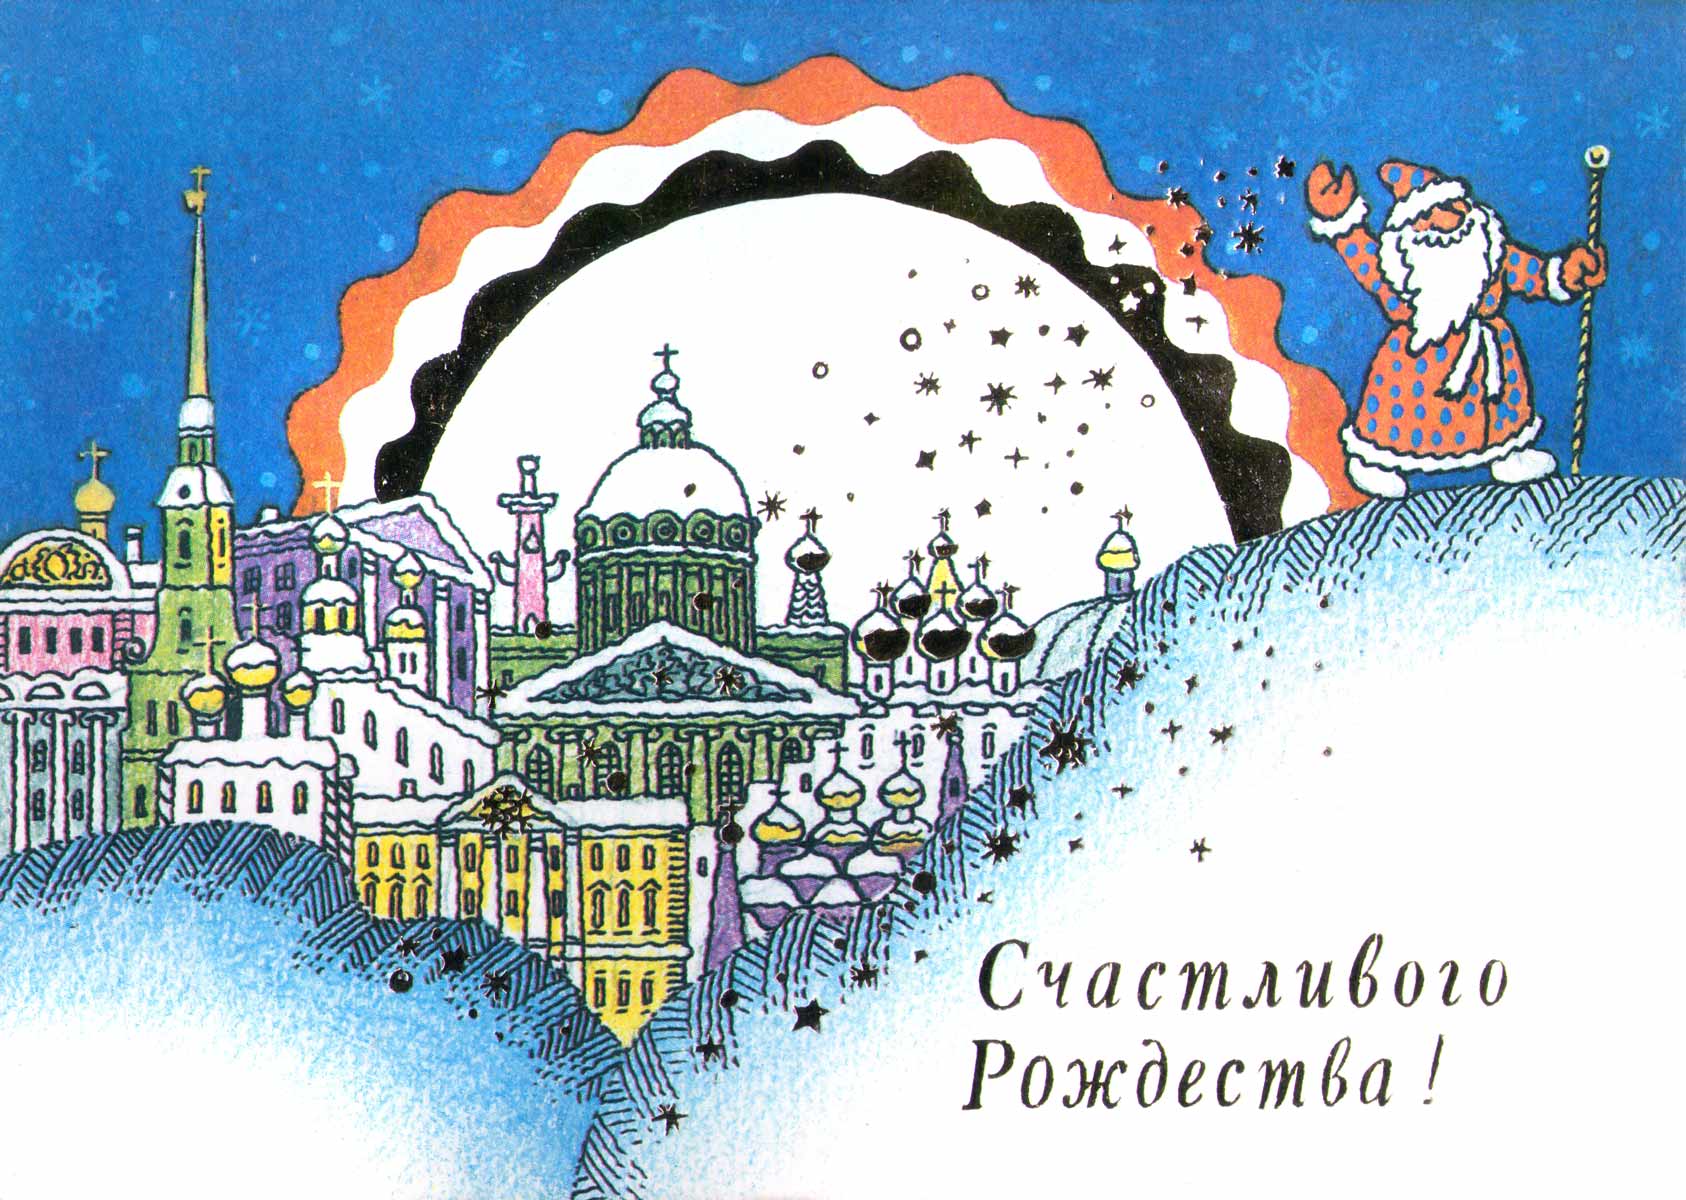 Петербург Поздравления С Рождеством